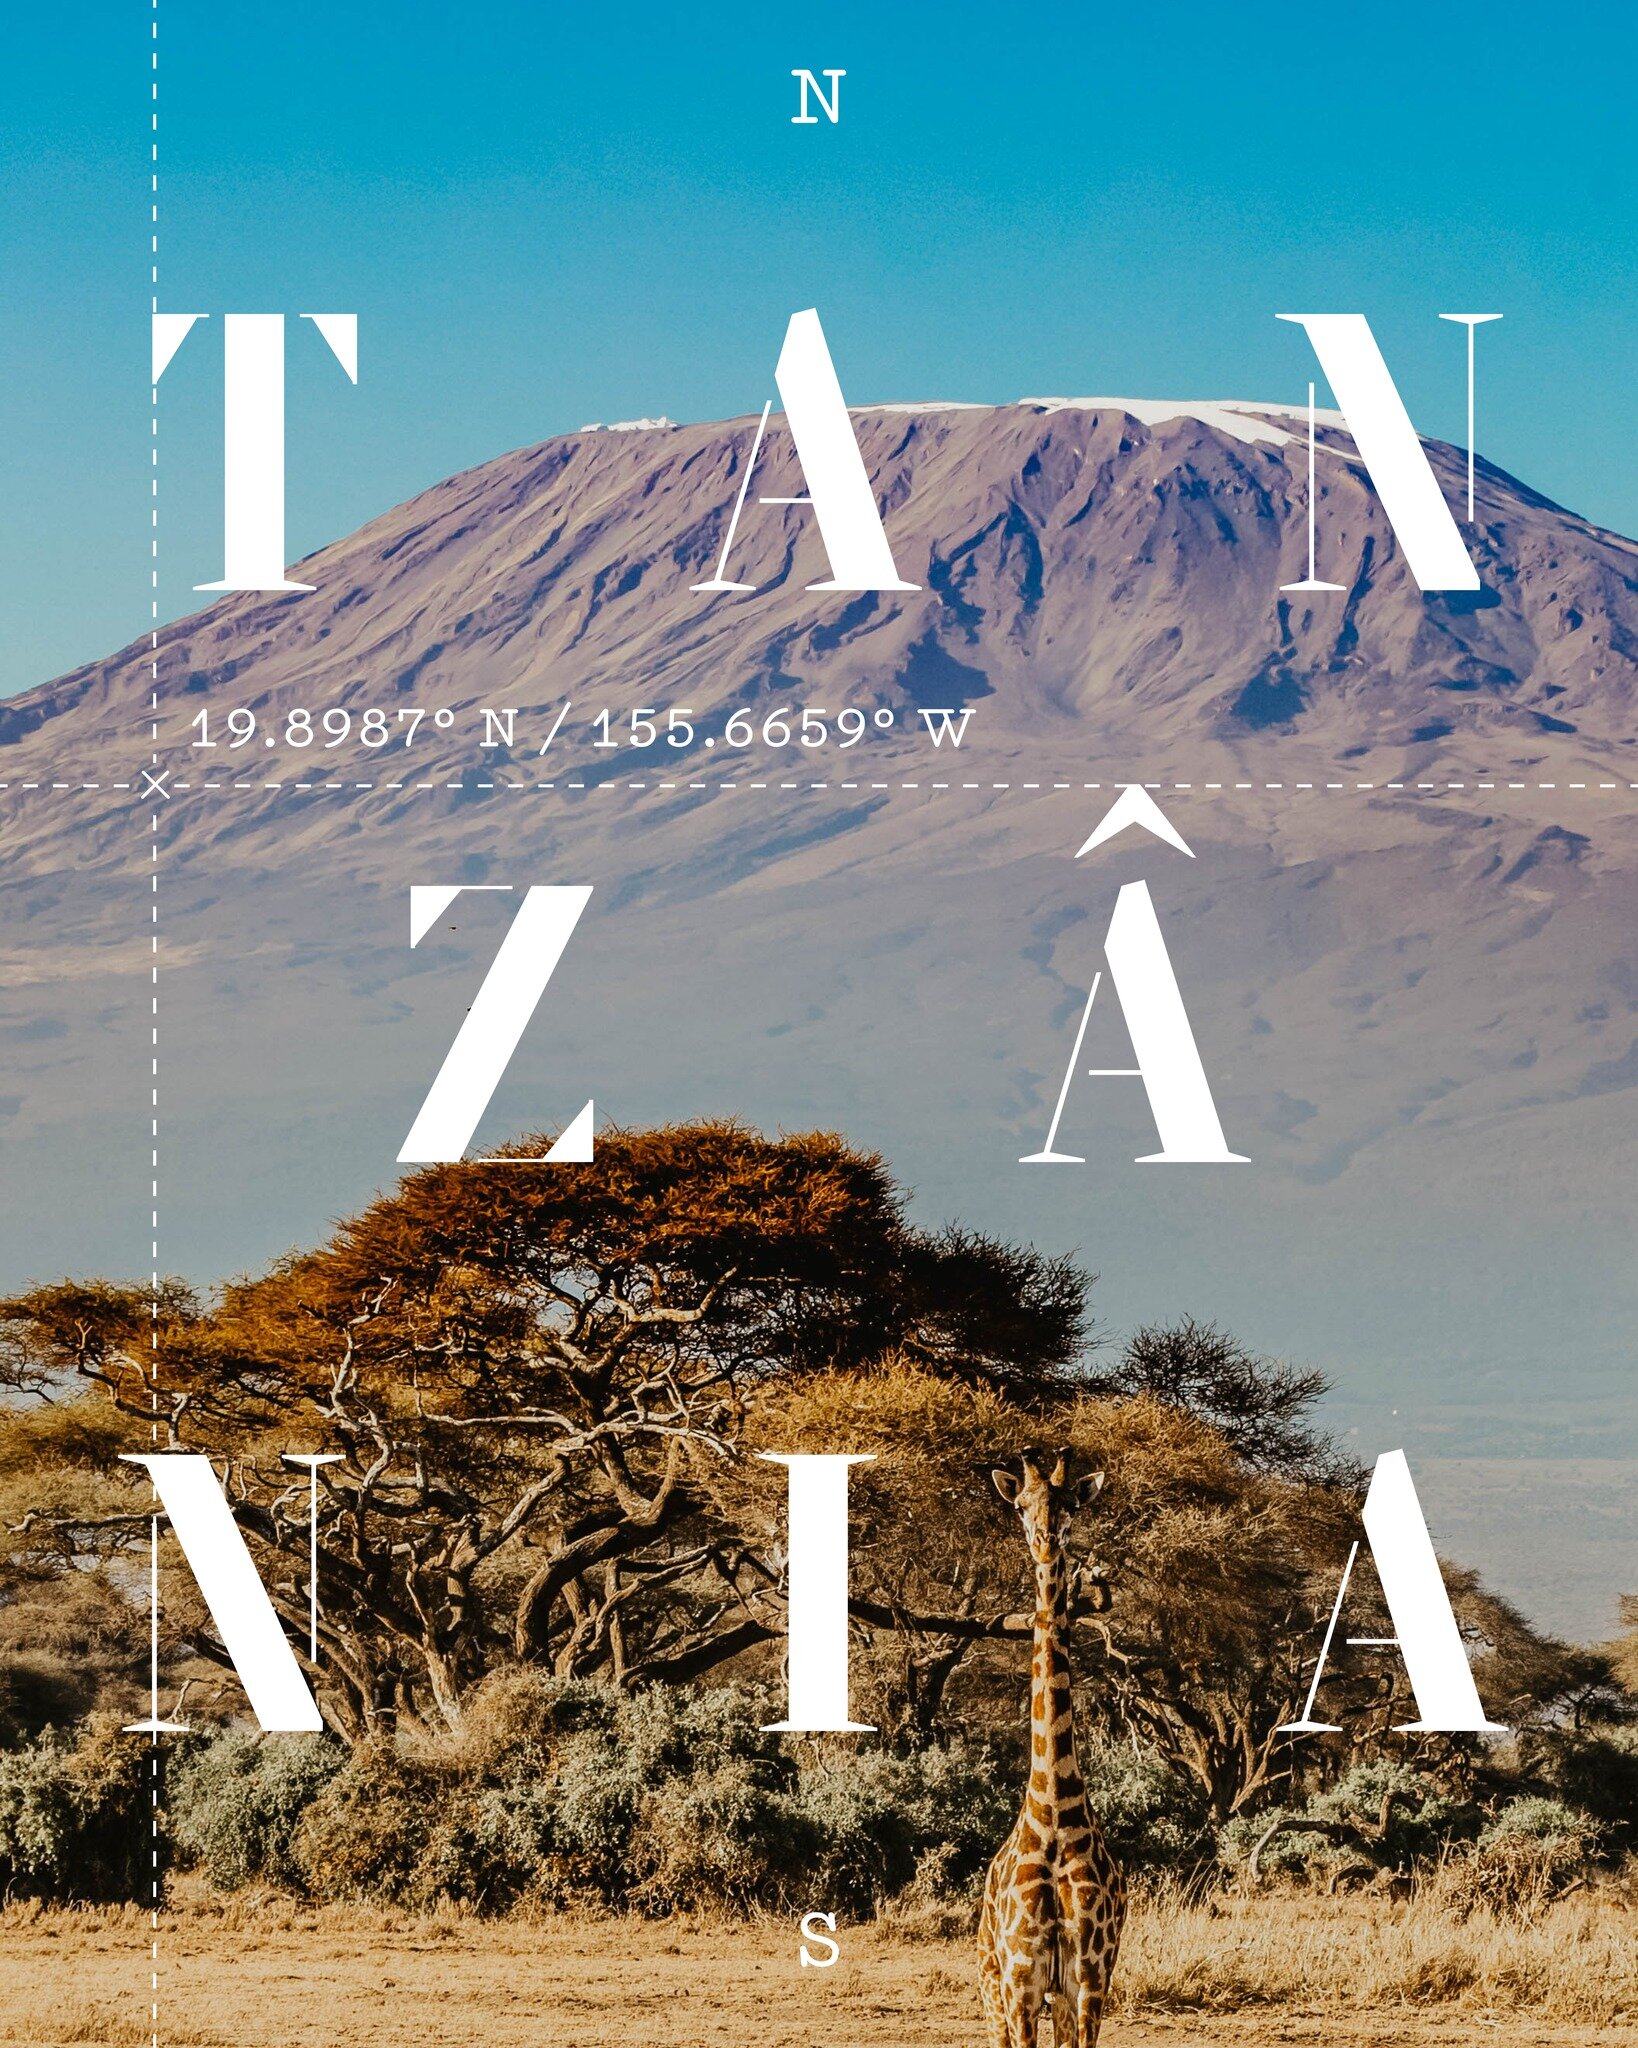 A Tanz&acirc;nia &eacute; lar do Monte Kilimanjaro, a mais alta da &Aacute;frica.  Esta montanha que fica a 5.895 metros acima do n&iacute;vel do mar, &eacute; uma  montanha singular, coroada de neve, que representa um &iacute;cone da Tanz&acirc;nia 